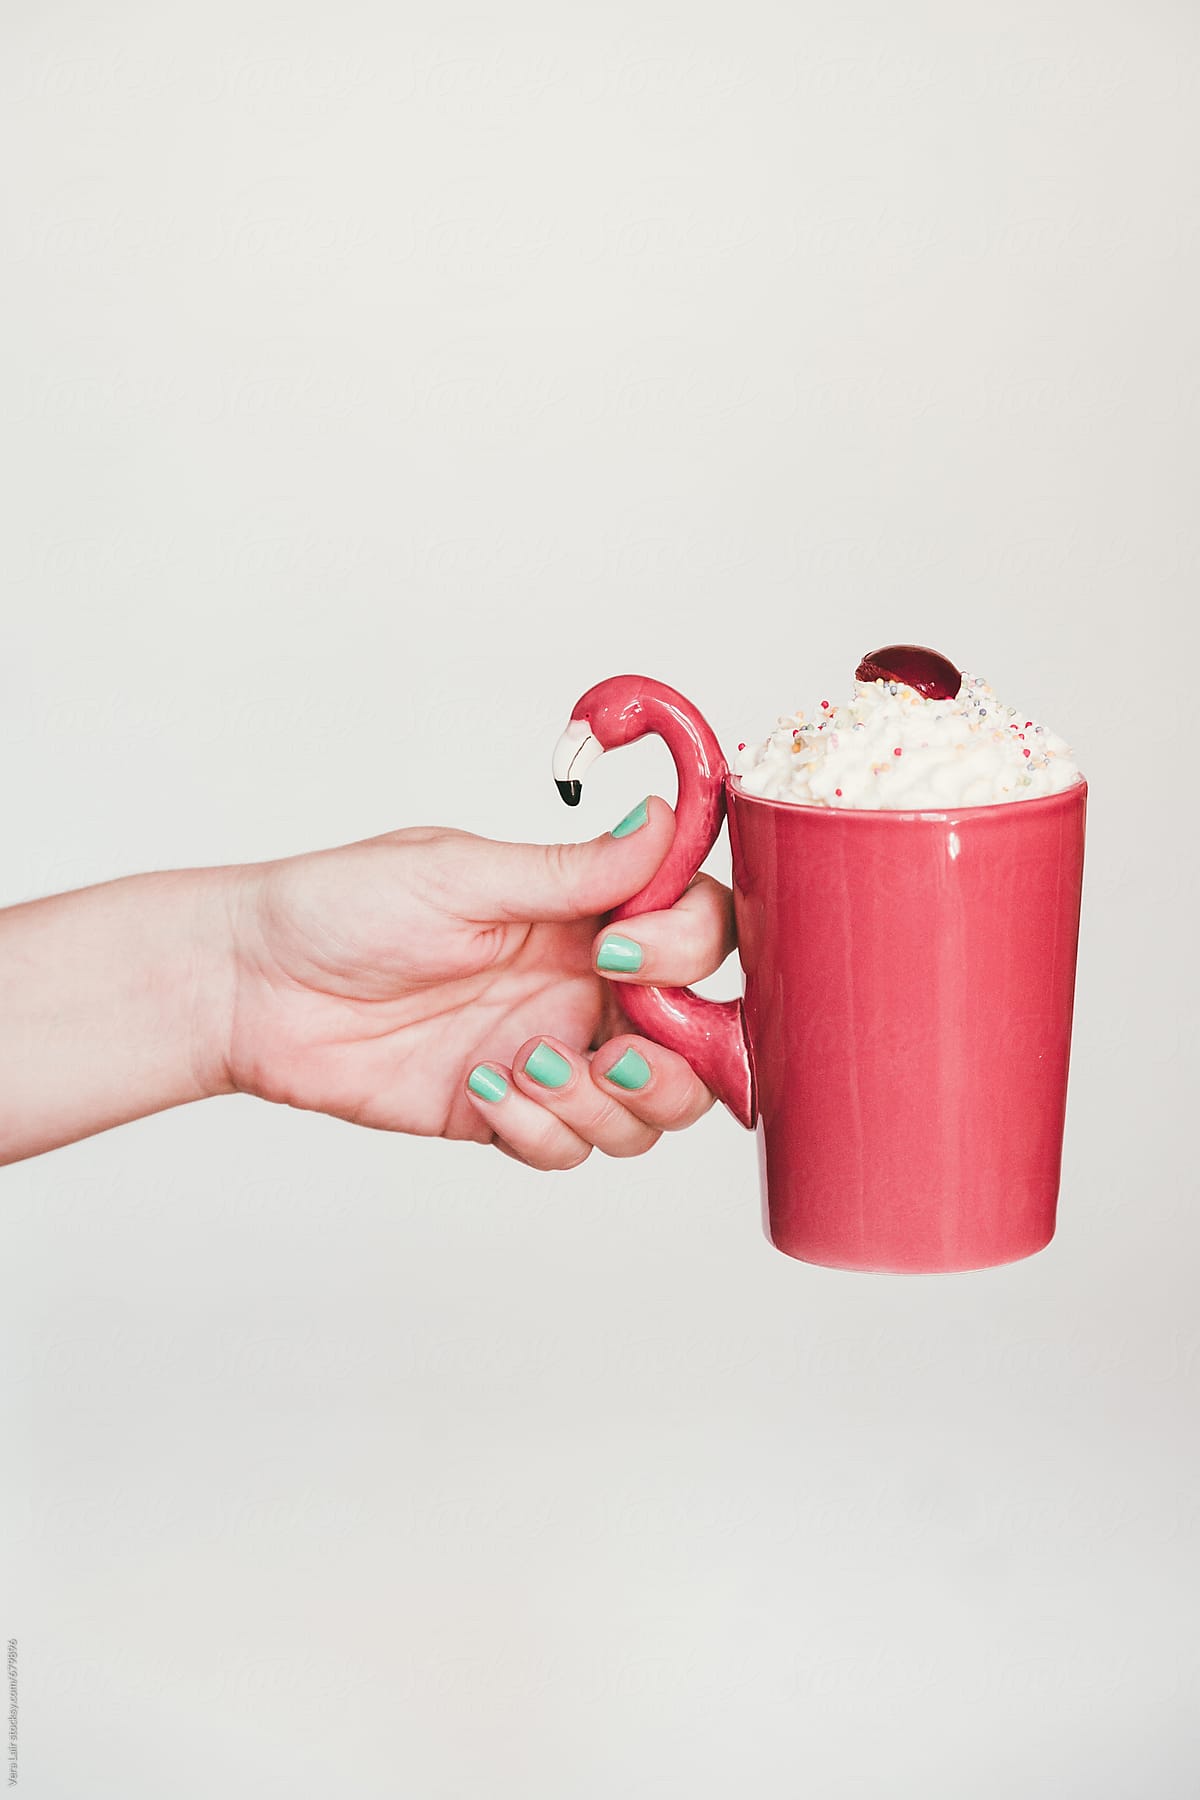 Hand holding a flamingo mug